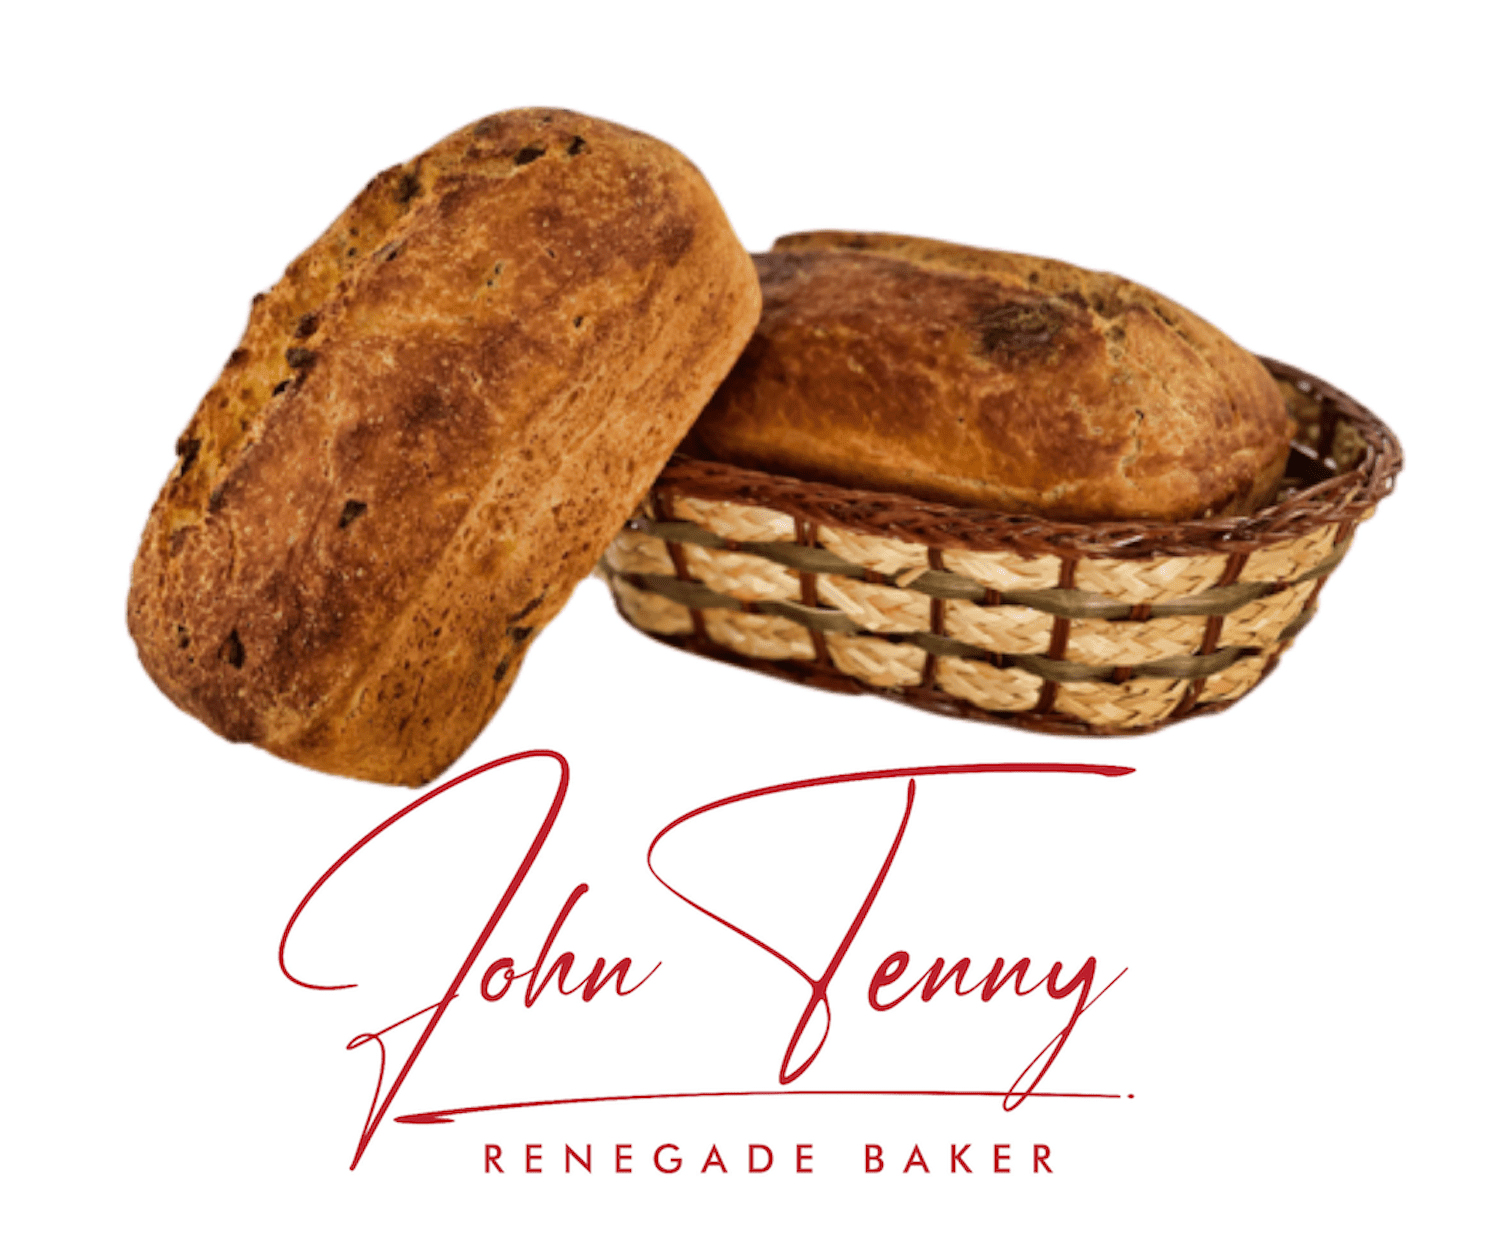 The Renegade Baker